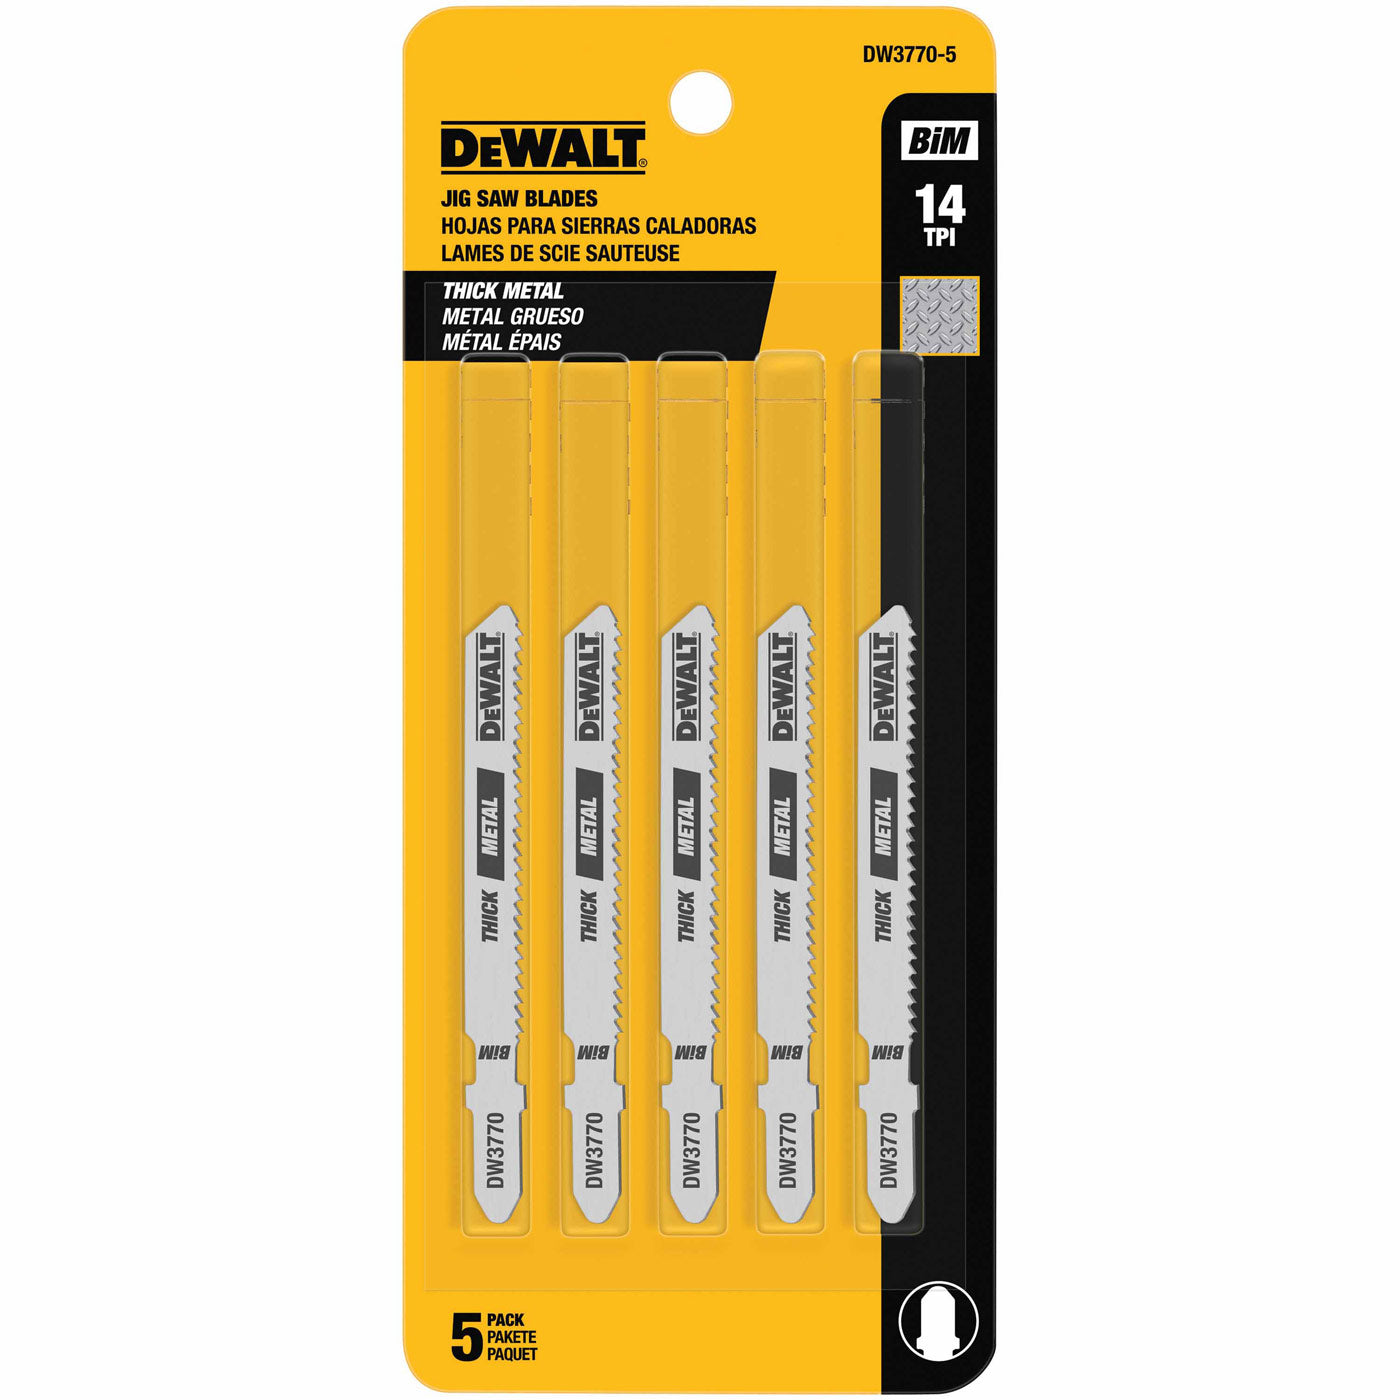 DeWalt DW3770-5 3" 14 TPI T-Shank Cobalt Steel Jig Saw Blade, 5 Pack